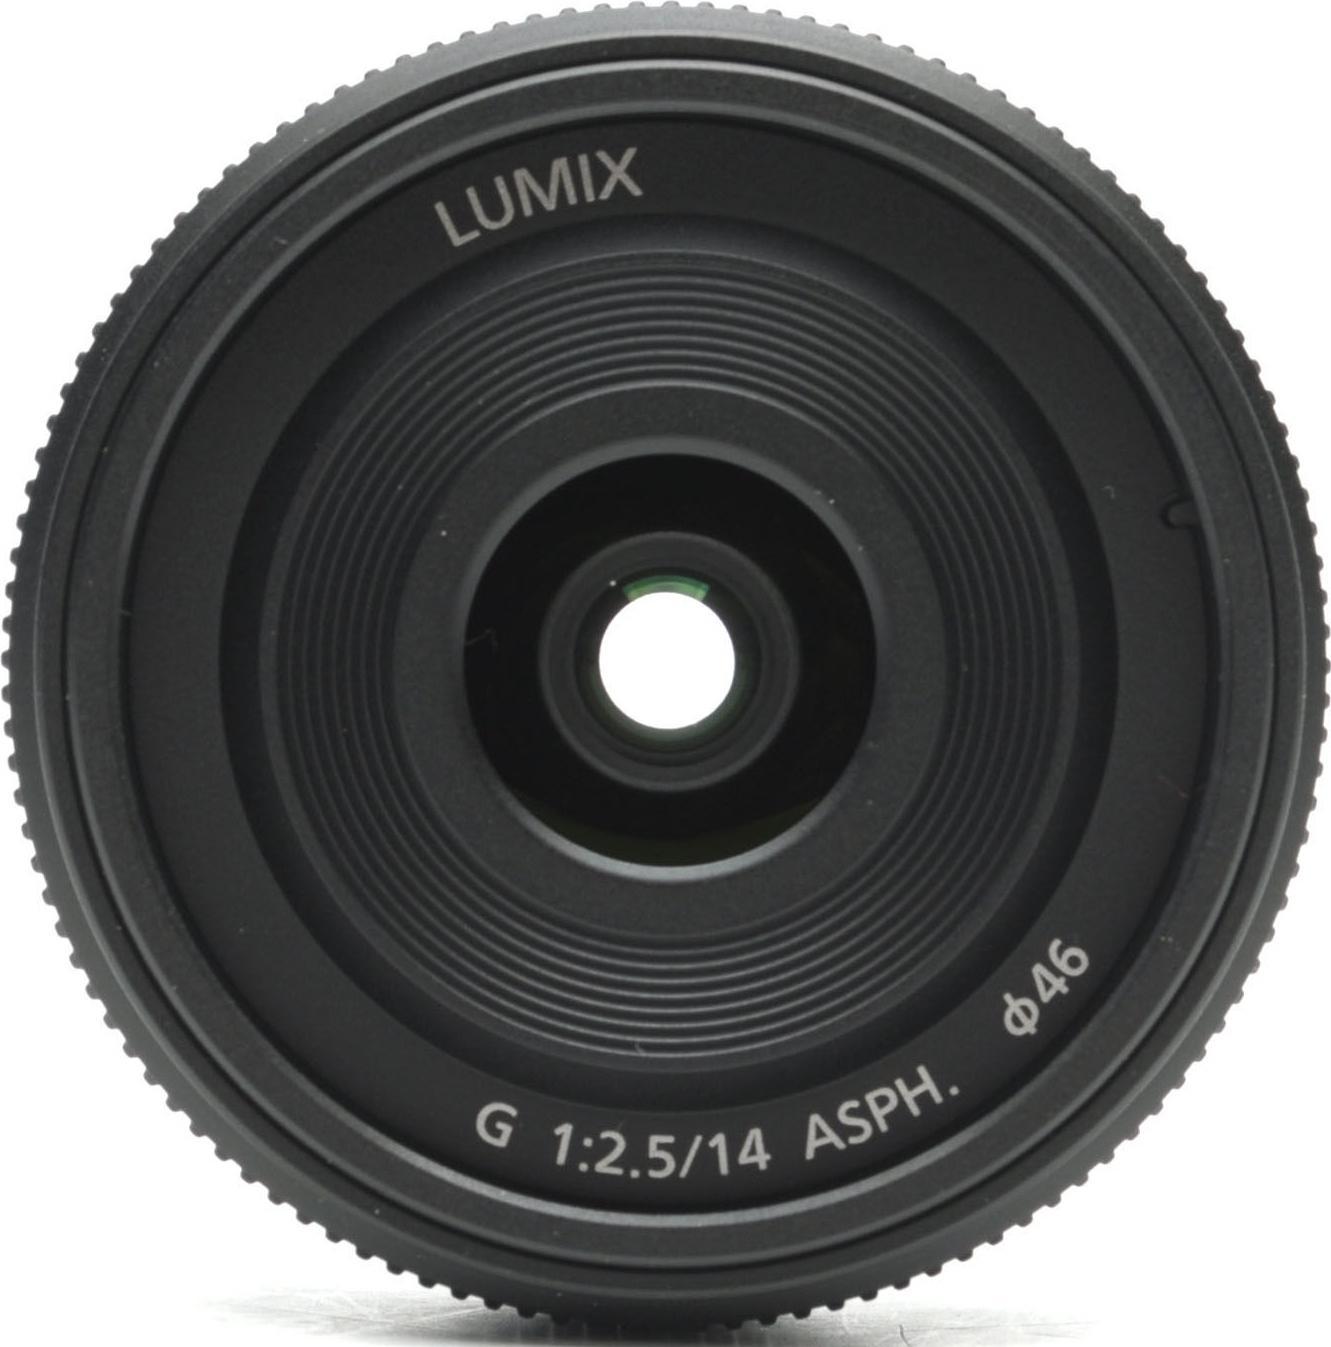 Panasonic Lumix G 14mm F2.5 II ASPH Lens | Full Specifications